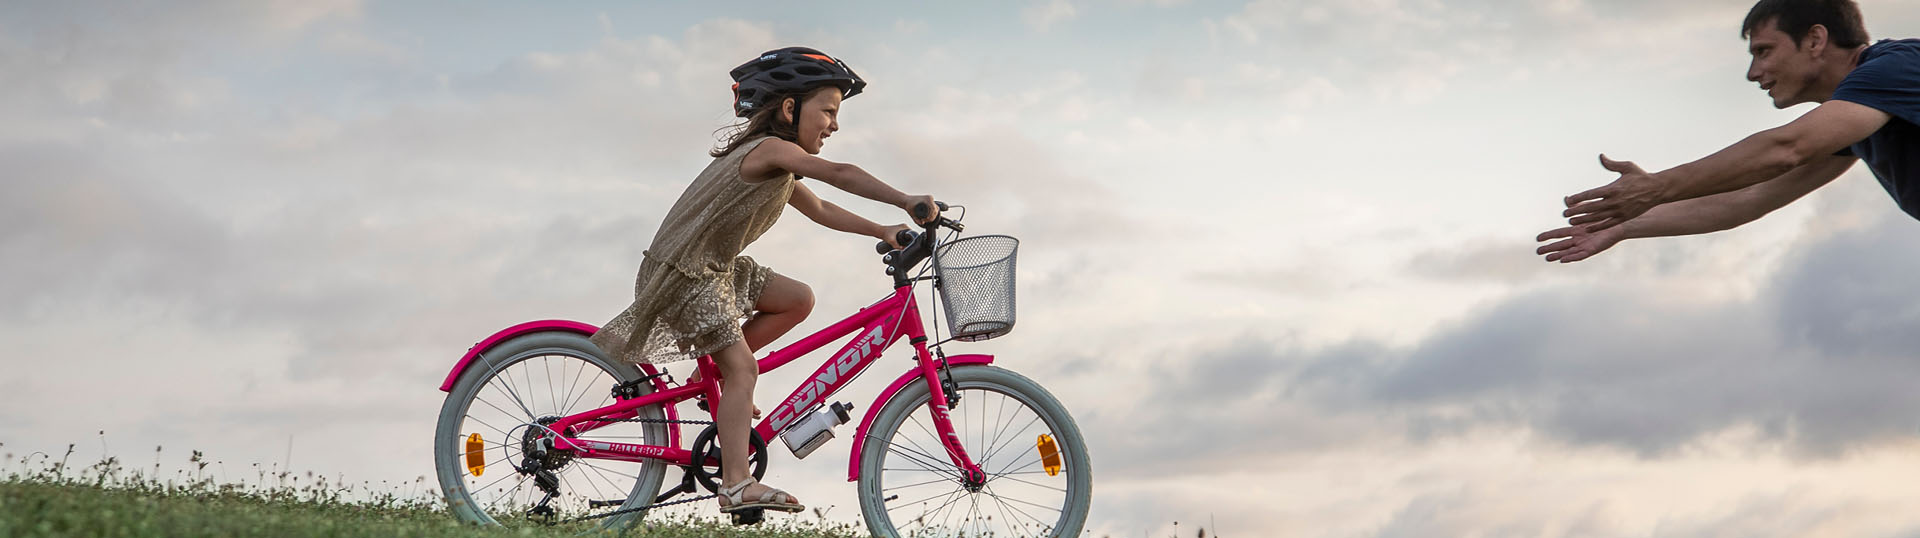 Bicicleta infantil 16 Conor Meteor rosa ⋆ Ciclo-mania